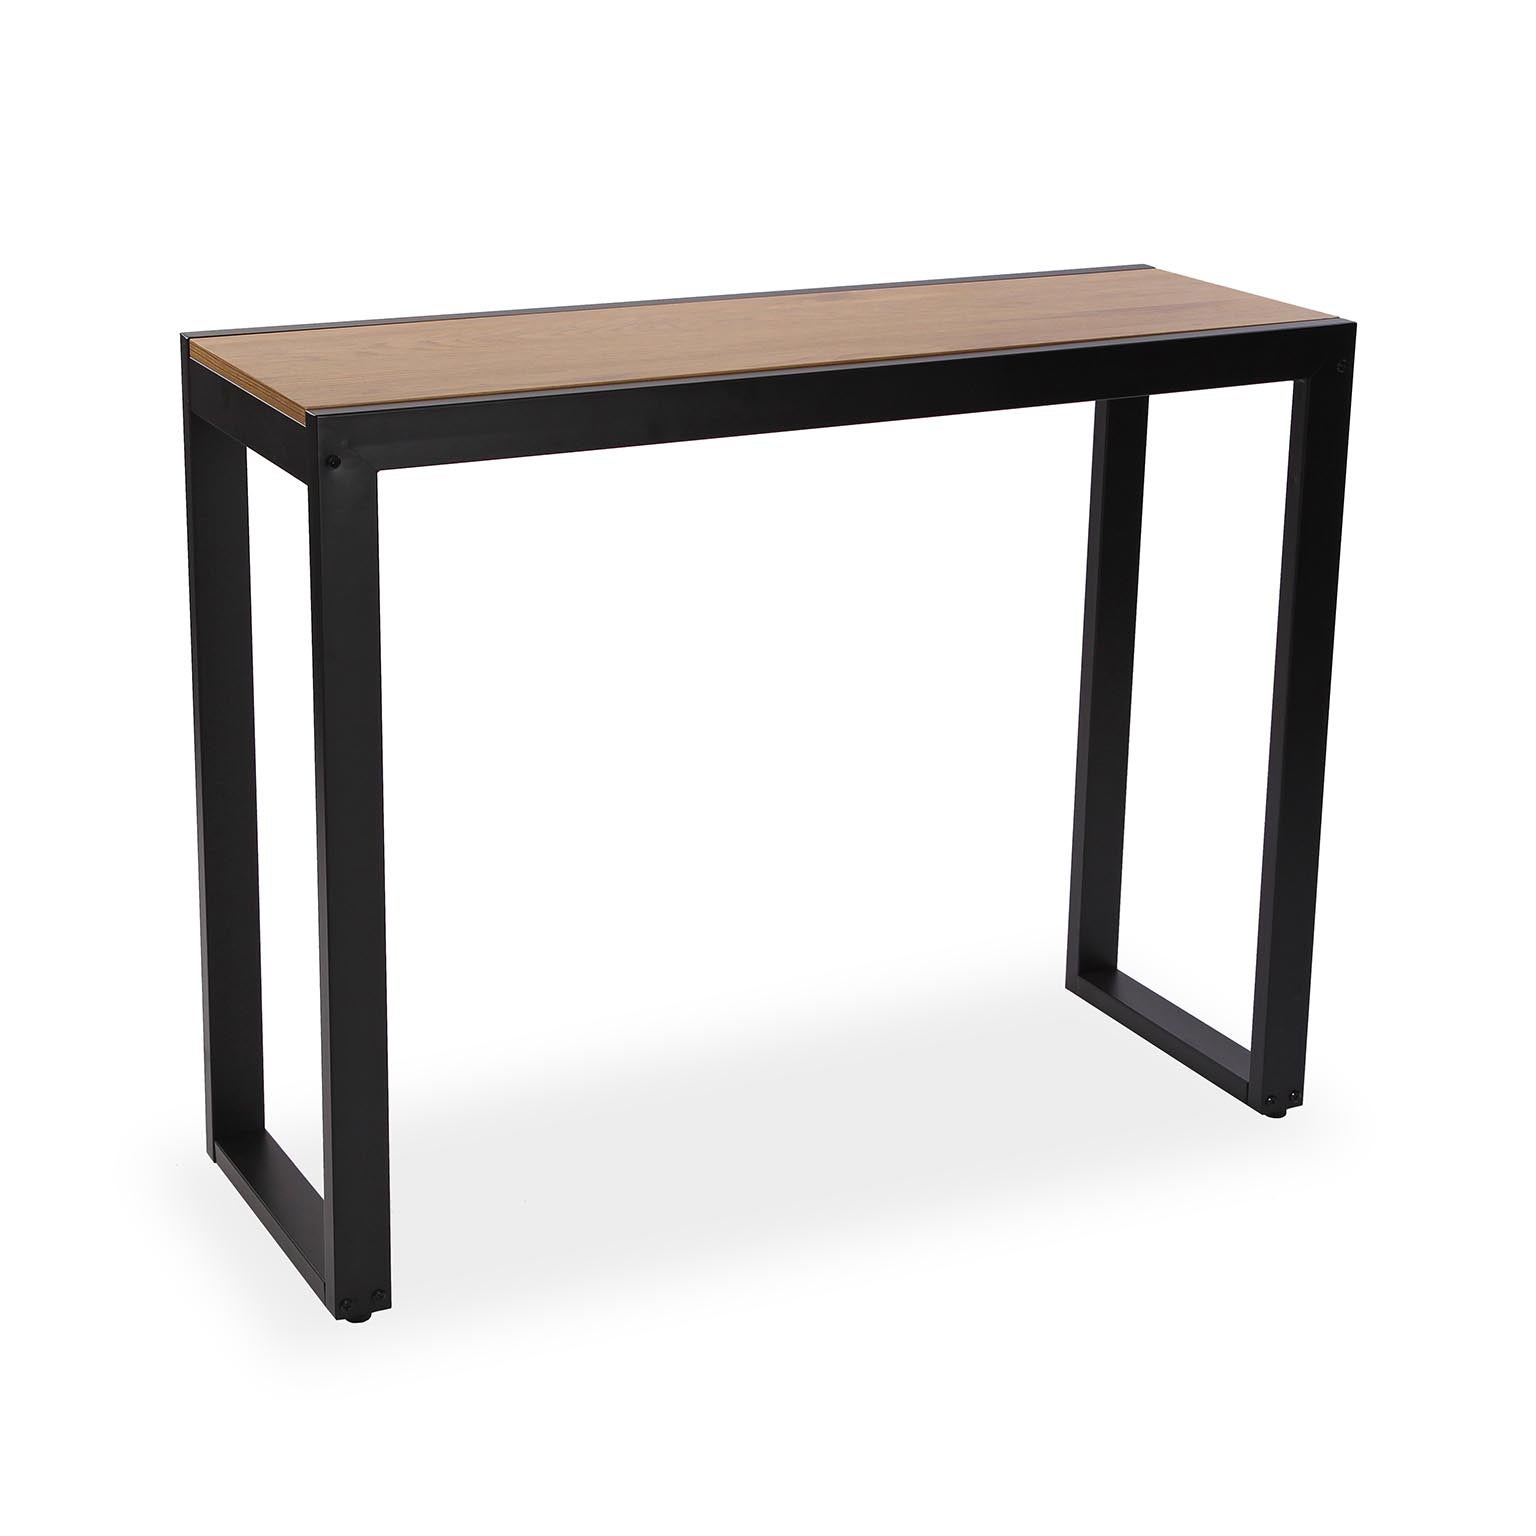 Versa harry mueble recibidor estrecho para entrada o pasillo, mesa consola, , medidas (al x l x an) 80 x 35 x 100 cm, madera mdf y metal, color marrón